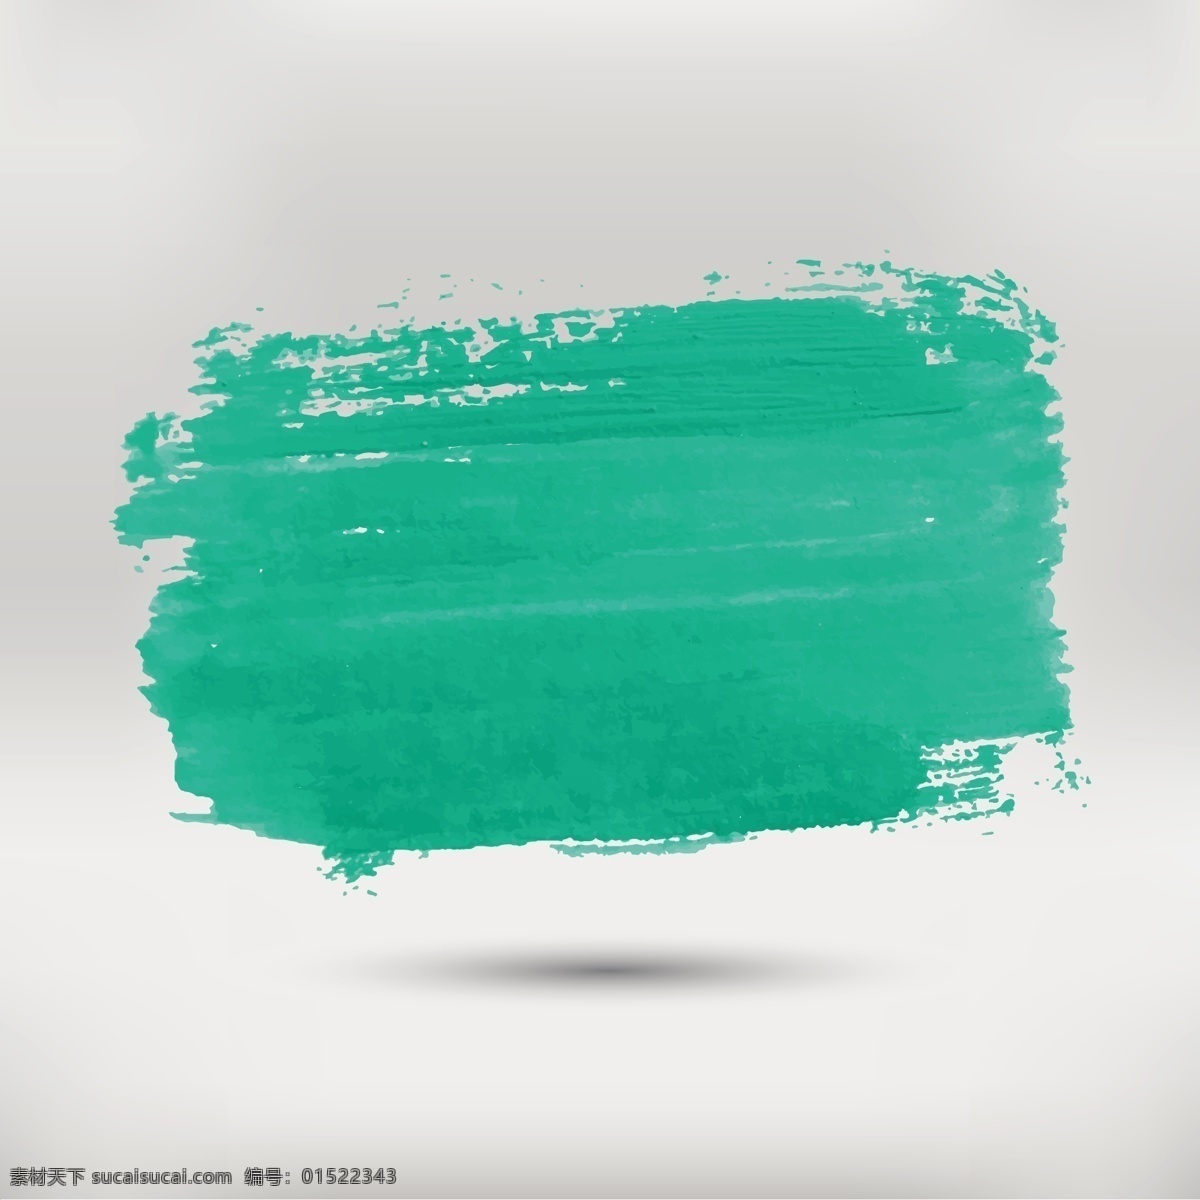 蓝色水彩污点 摘要 水彩 手 绿色 油漆 画笔 颜色 艺术 绘画 笔画 笔触 染色 刷 中风 画 有色 彩绘